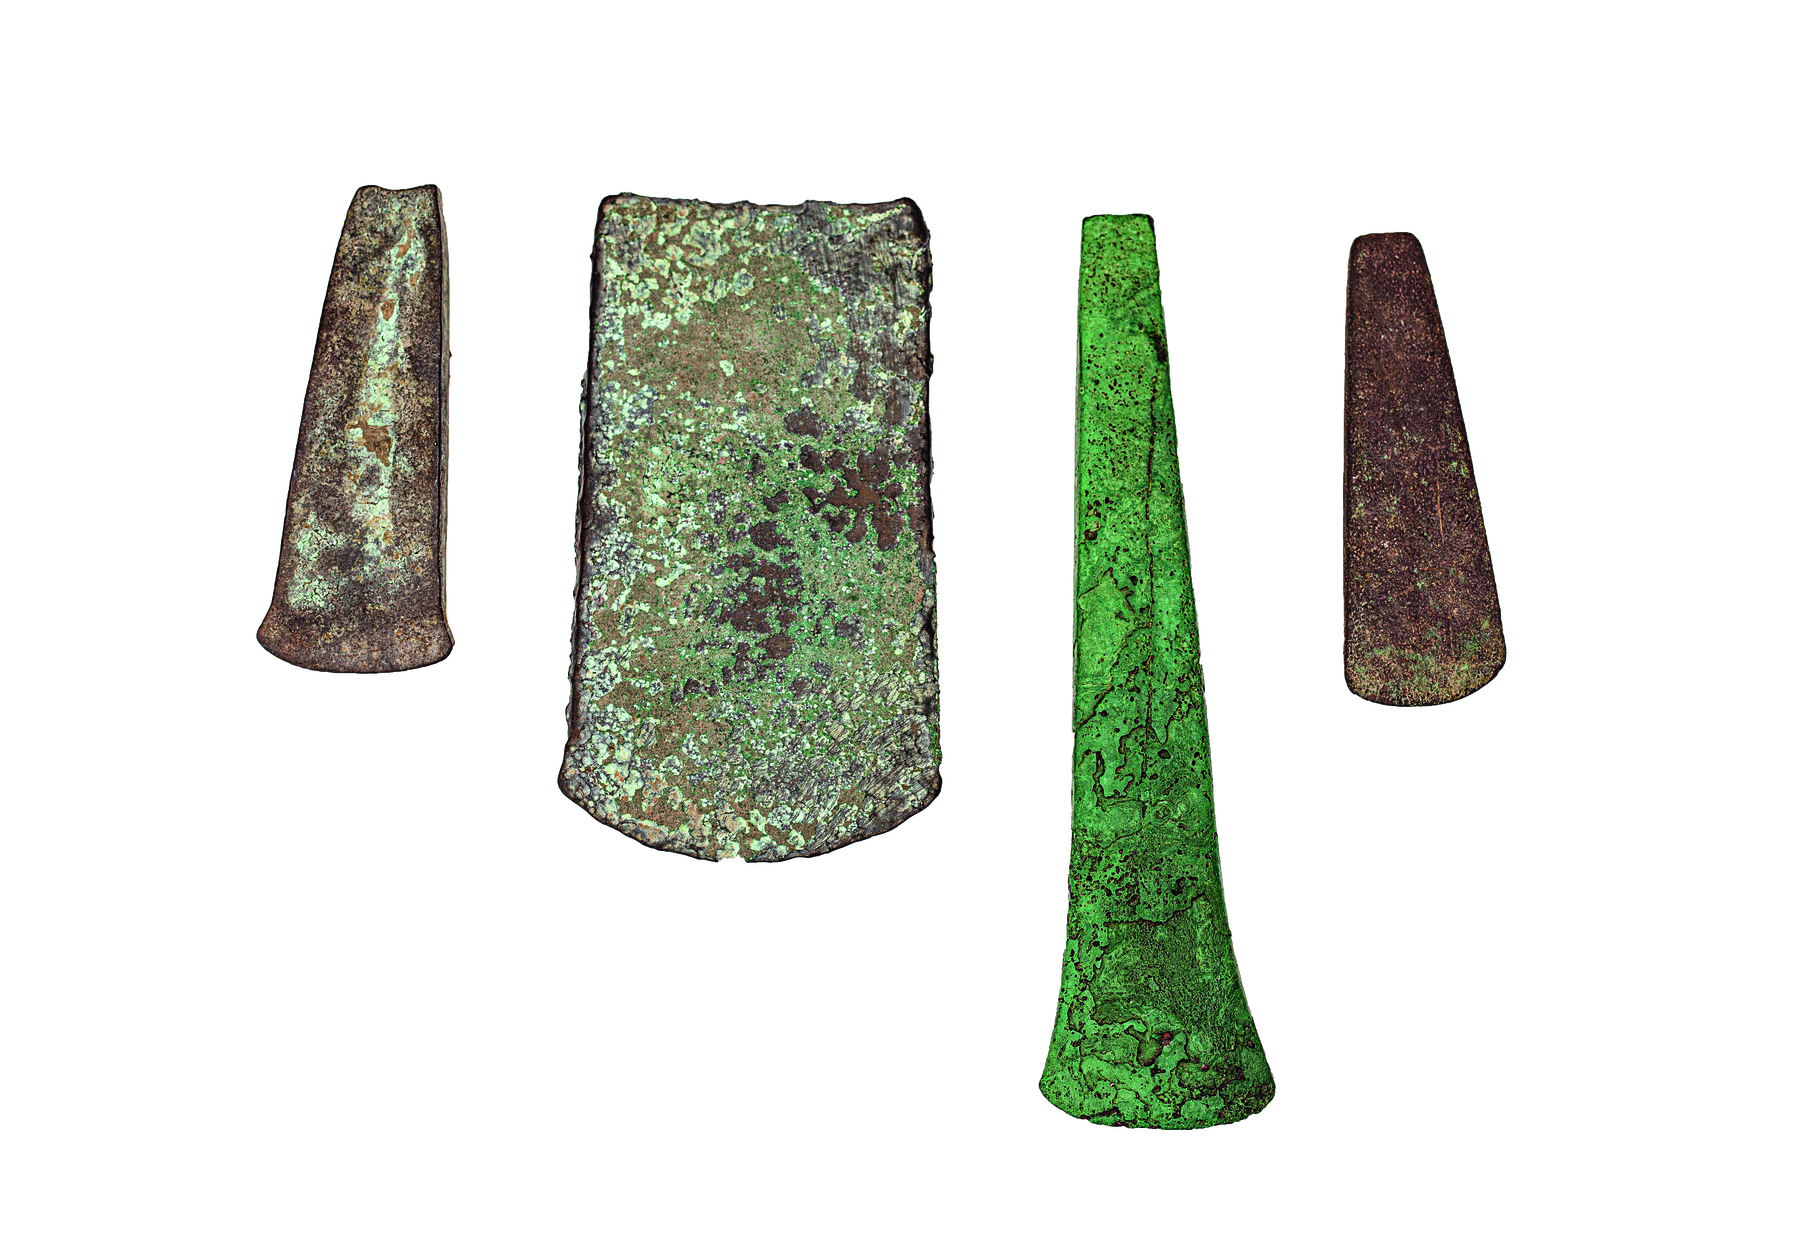 Fotografia. Quatro artefatos de metal retangulares, com pontas arredondadas, de diferentes espessuras.